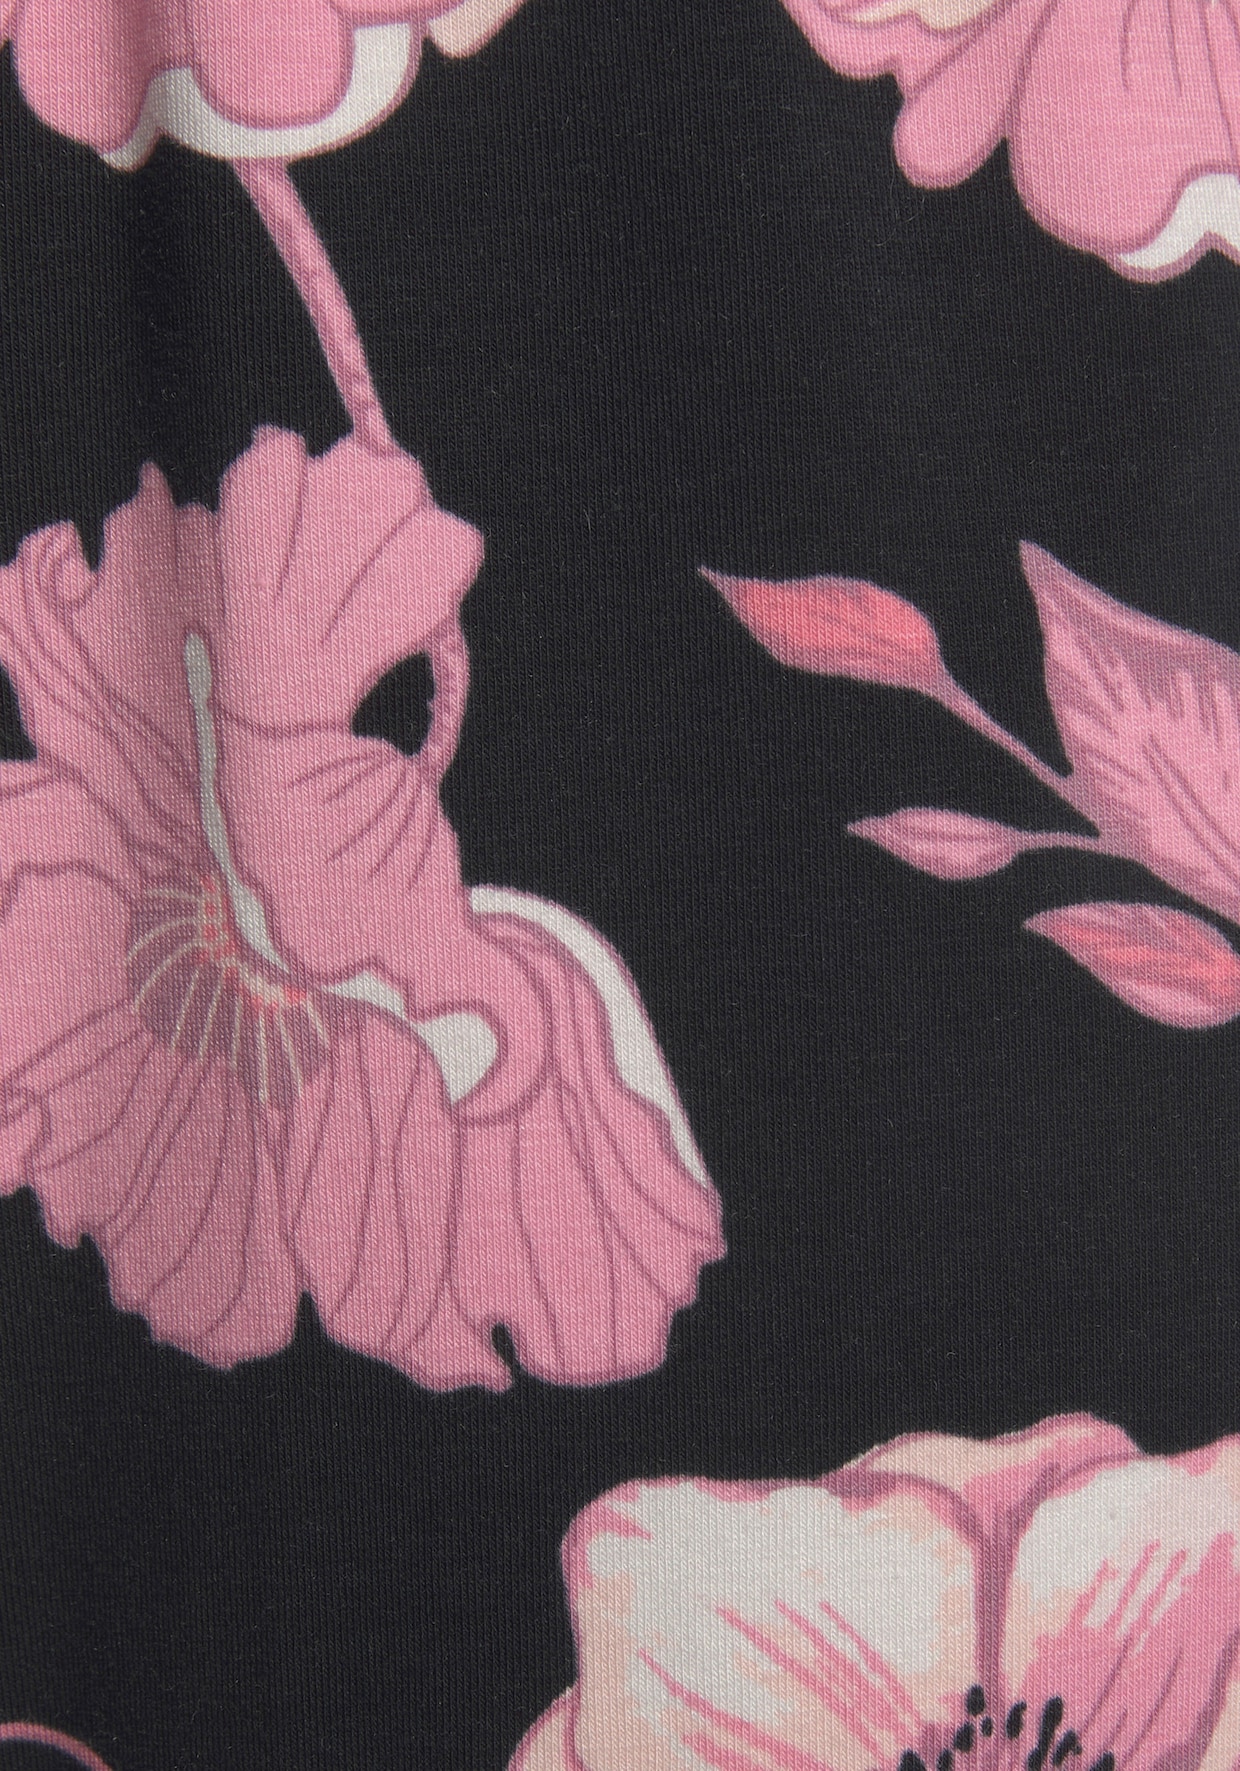 LASCANA Pantalon de nuit - noir-rose à fleurs